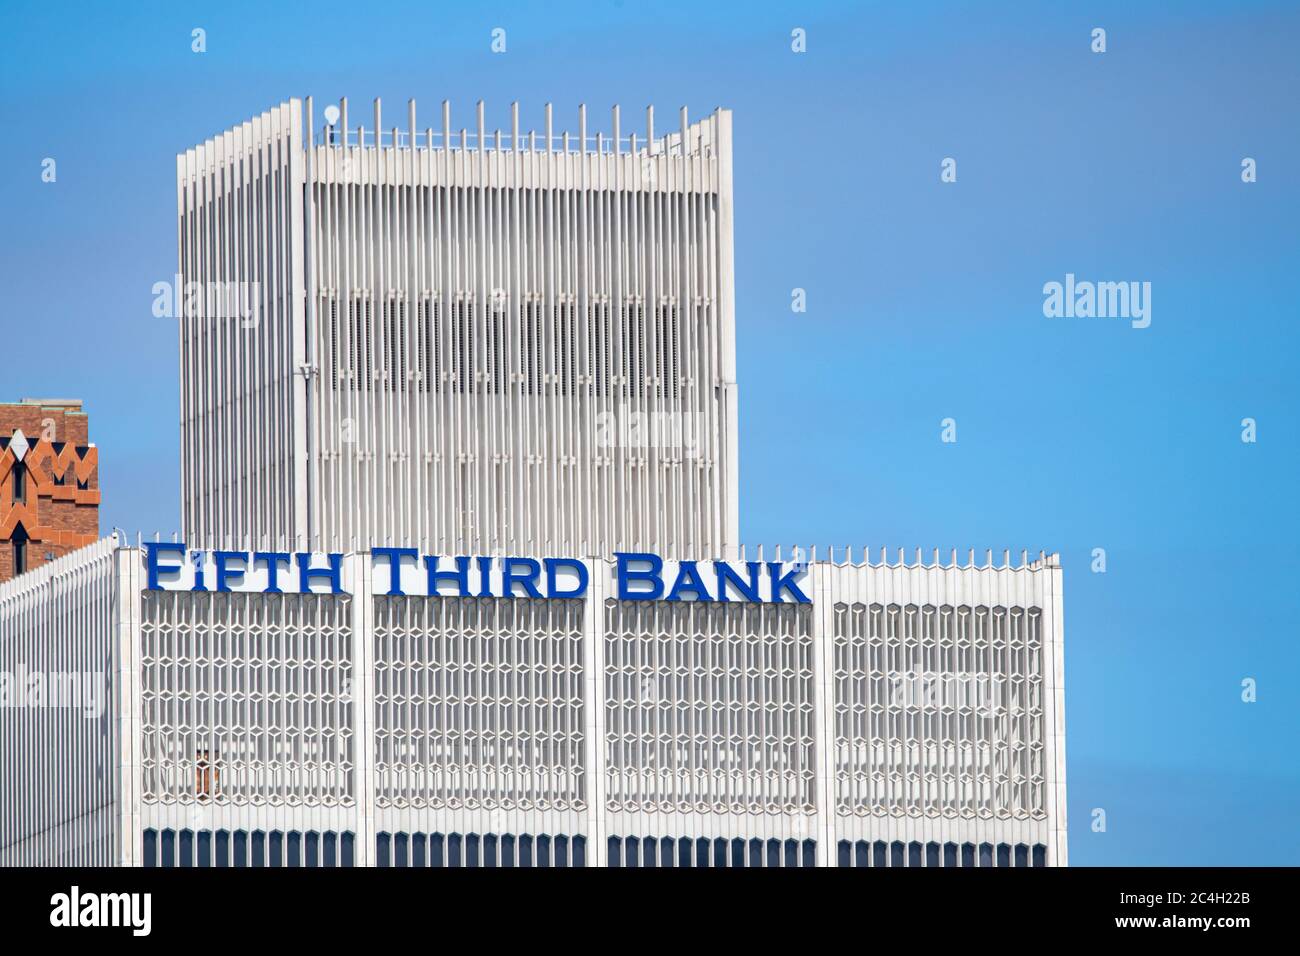 Fifth Third Bank, logo d'une société bancaire américaine, visible au sommet d'un immeuble de bureaux Woodward dans le centre-ville de Detroit, Michigan. Banque D'Images